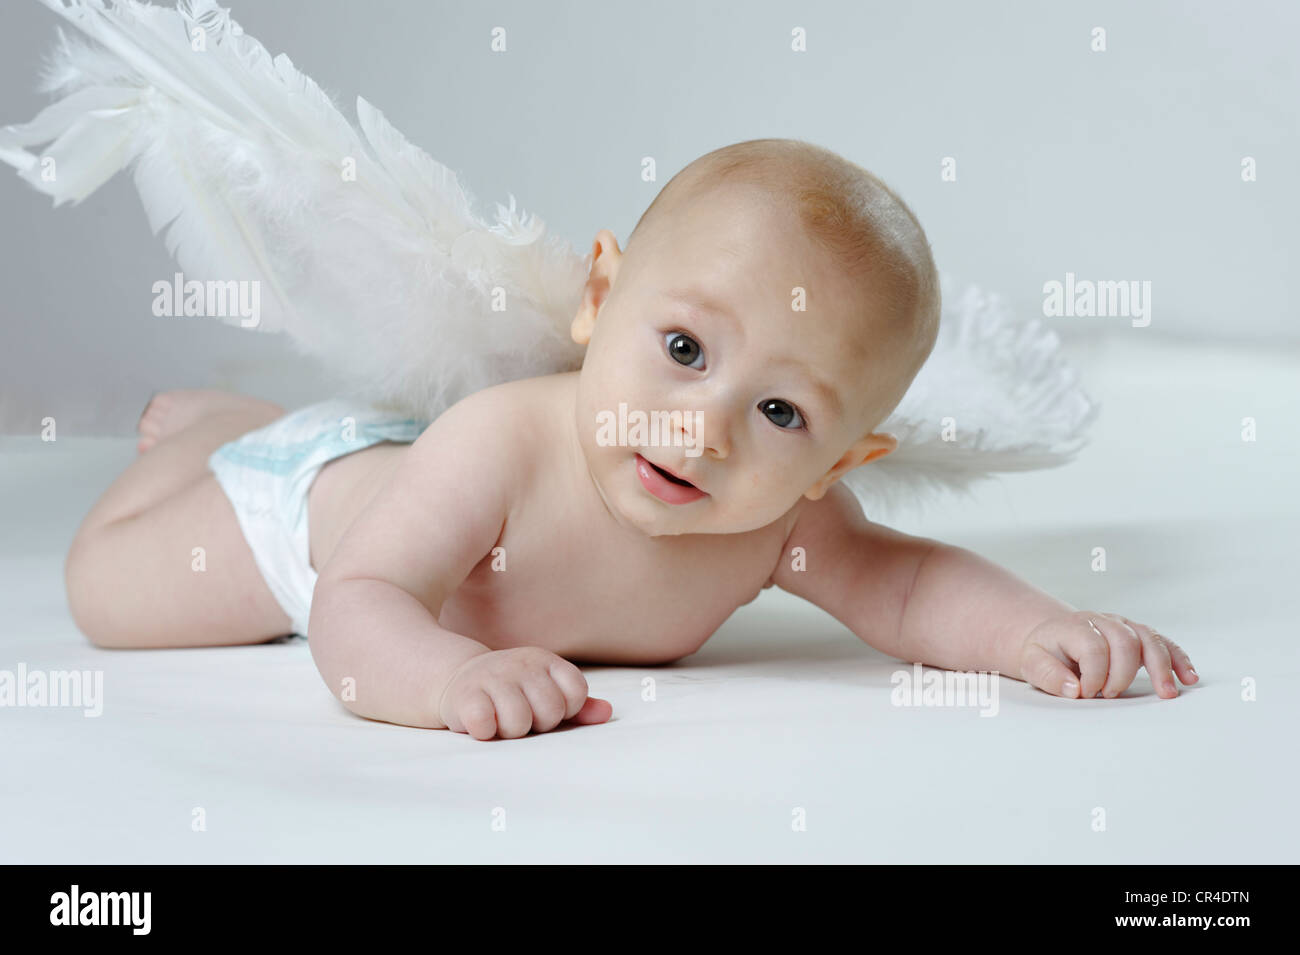 Little baby indossando ali d'angelo, il desiderio di avere figli Foto Stock